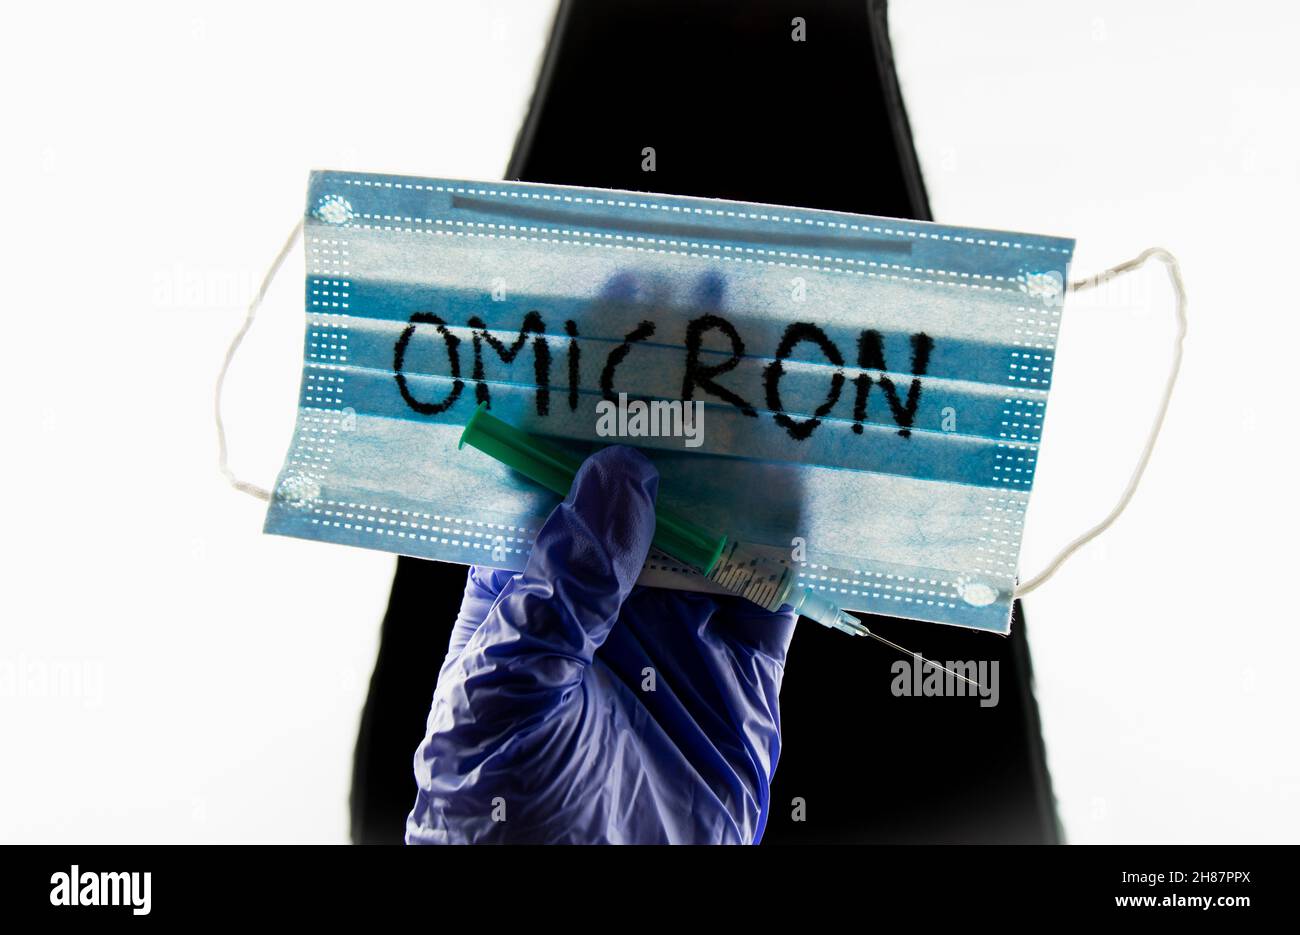 Nuovo concetto Omicron di mutazione di Coronavirus Covid-19. Maschera medica, siringa e testo con lettere Omicron. Foto Stock